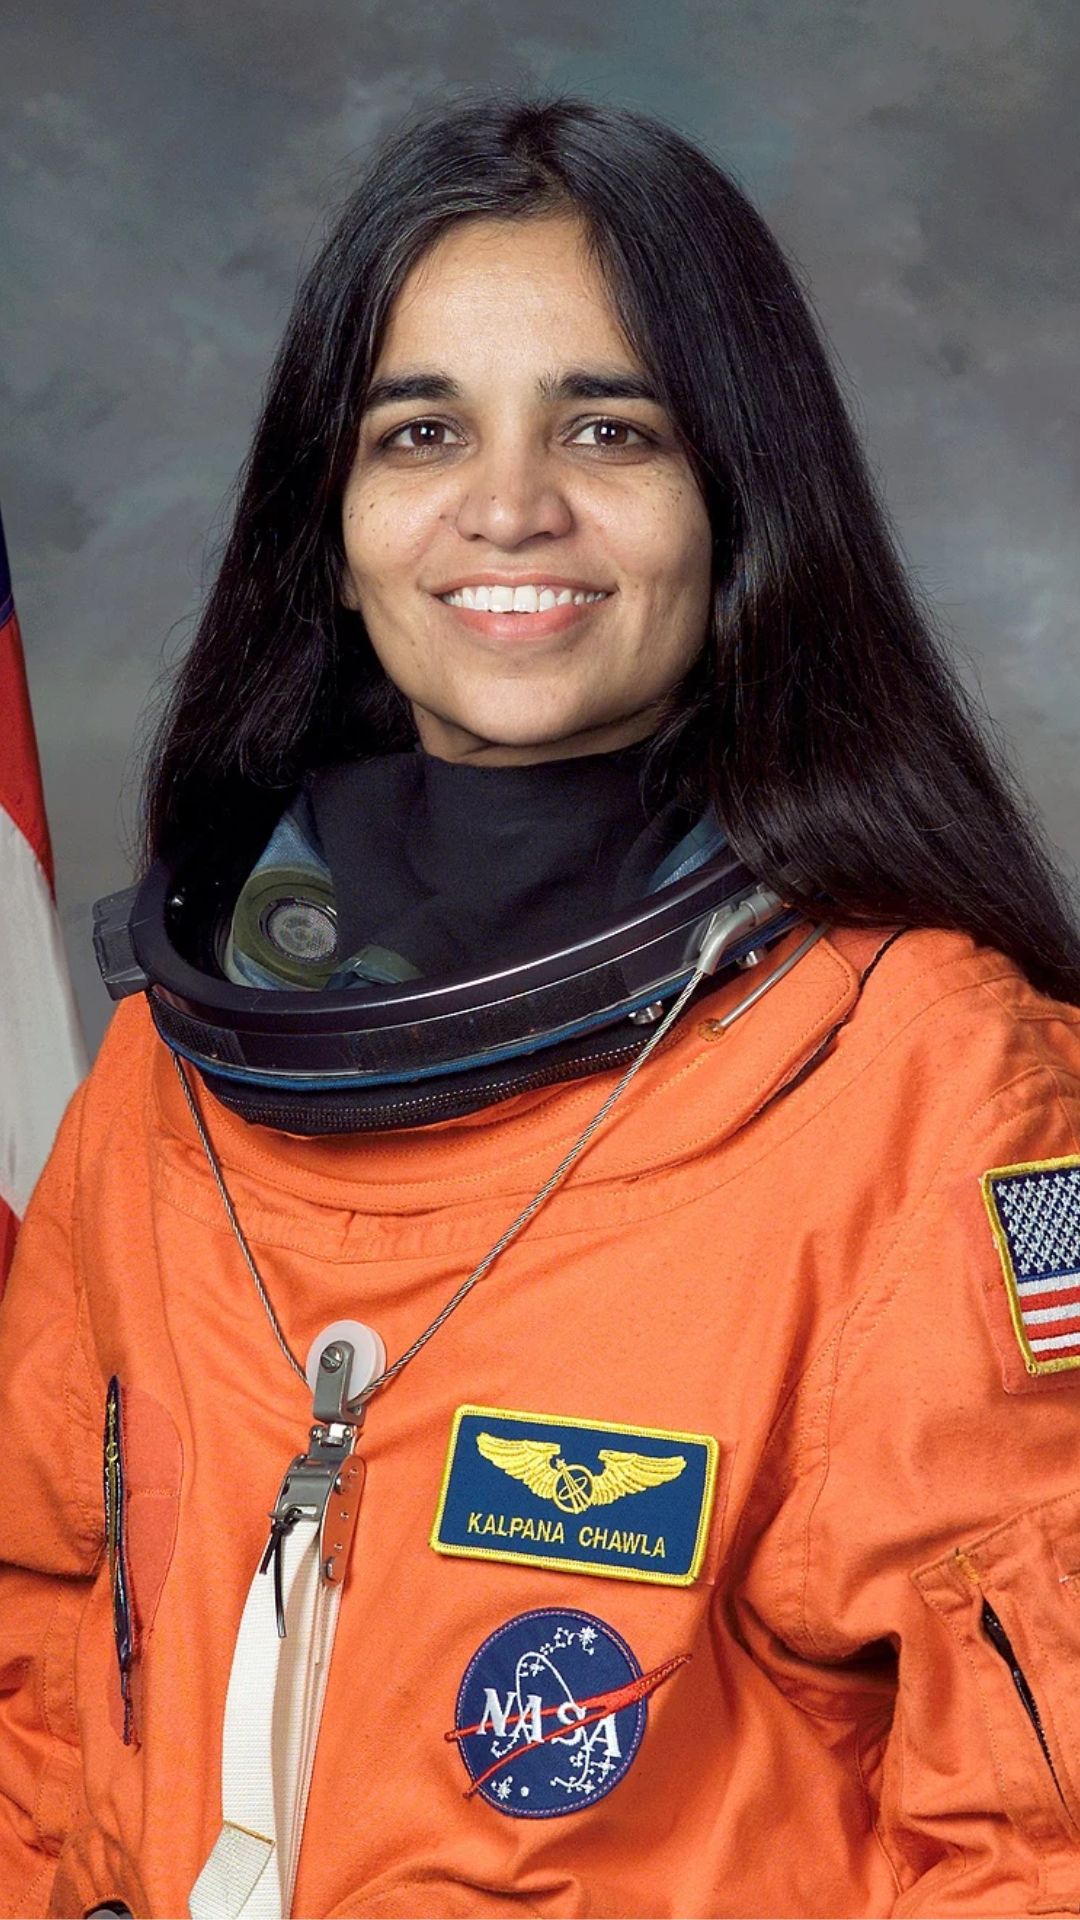 1. Kalpana Chawla: The first Indian-born woman to fly in space and the first Indian woman to reach space twice.